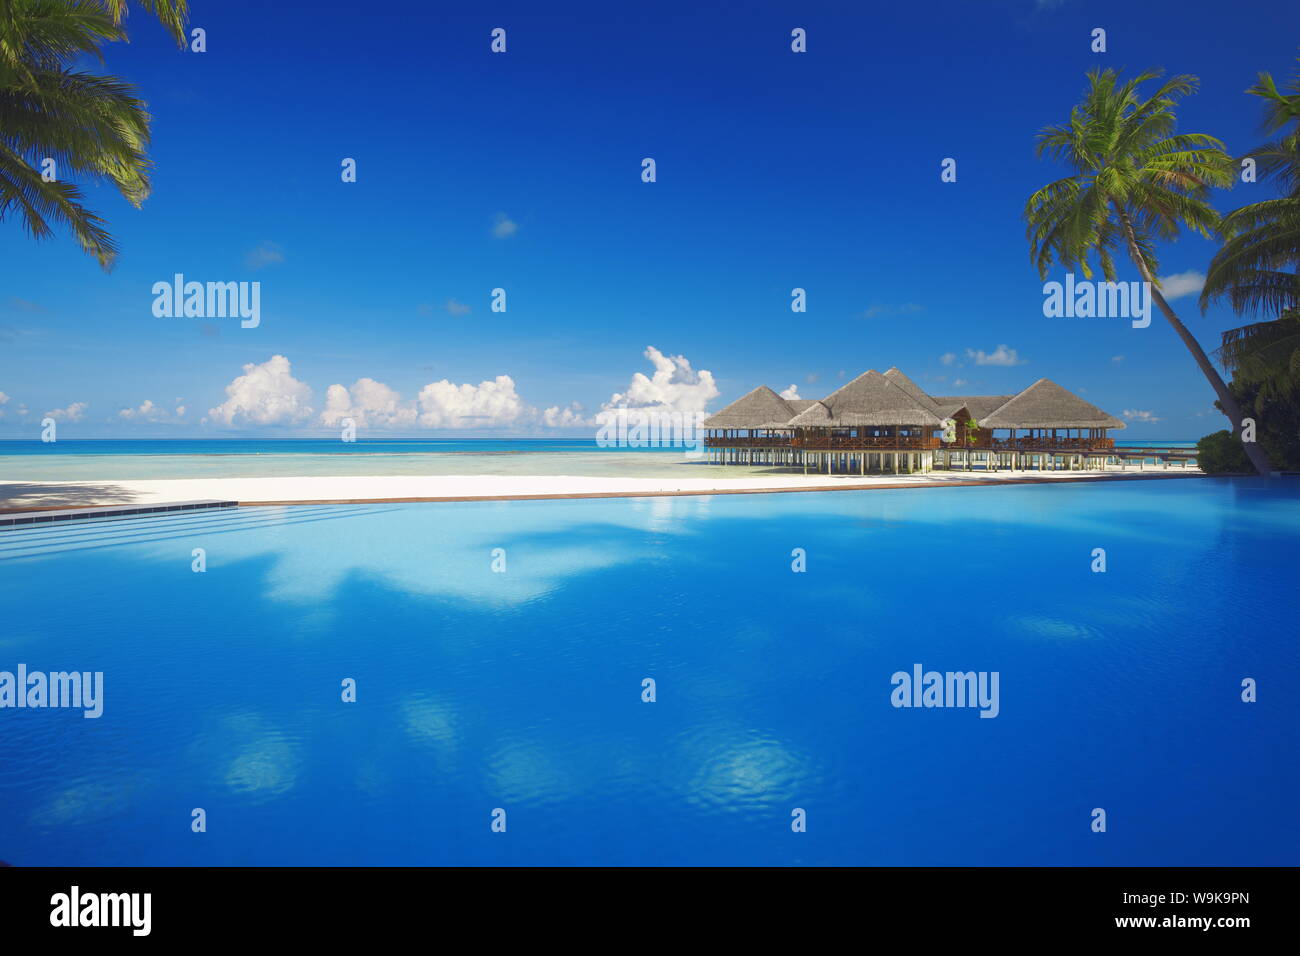 Piscina, palmeras y cabañas de playa, Maldivas, Océano Índico, Asia Foto de stock